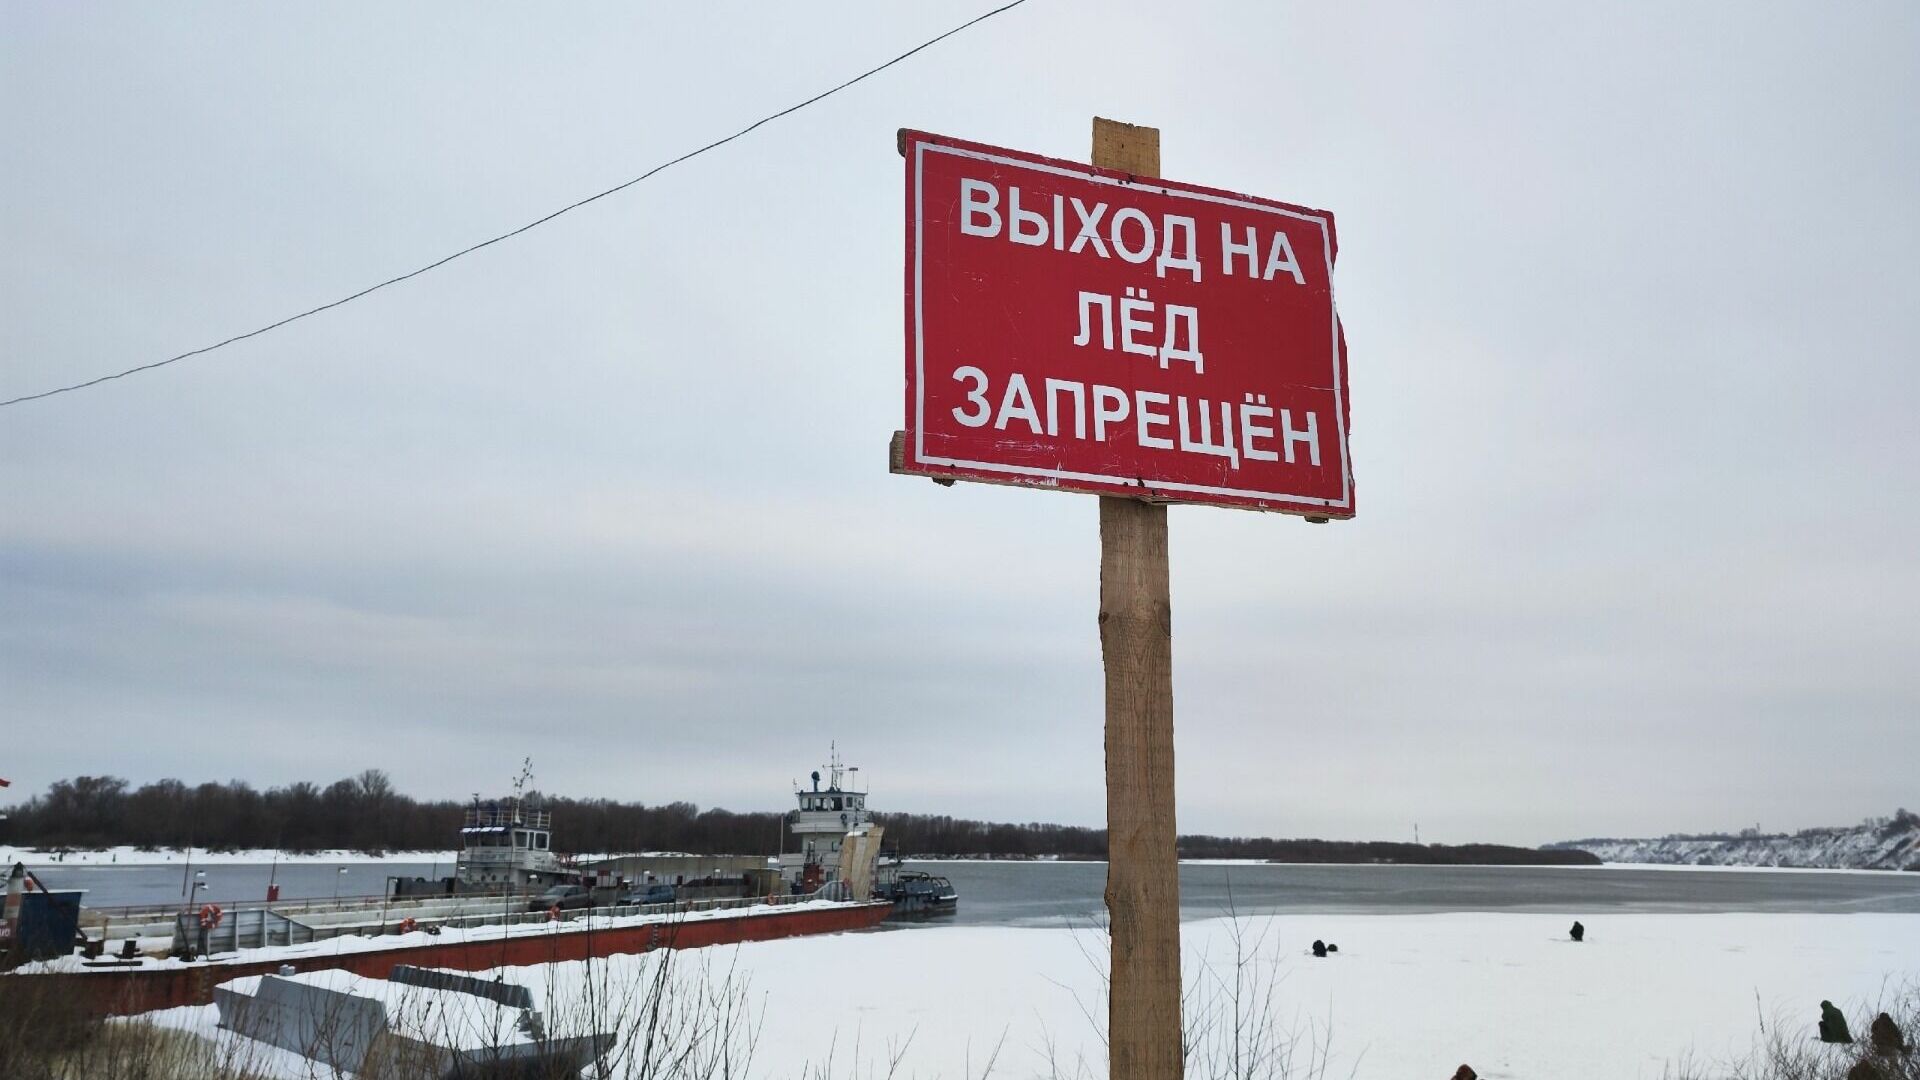 Ледоход на нижегородских реках начнется в апреле 